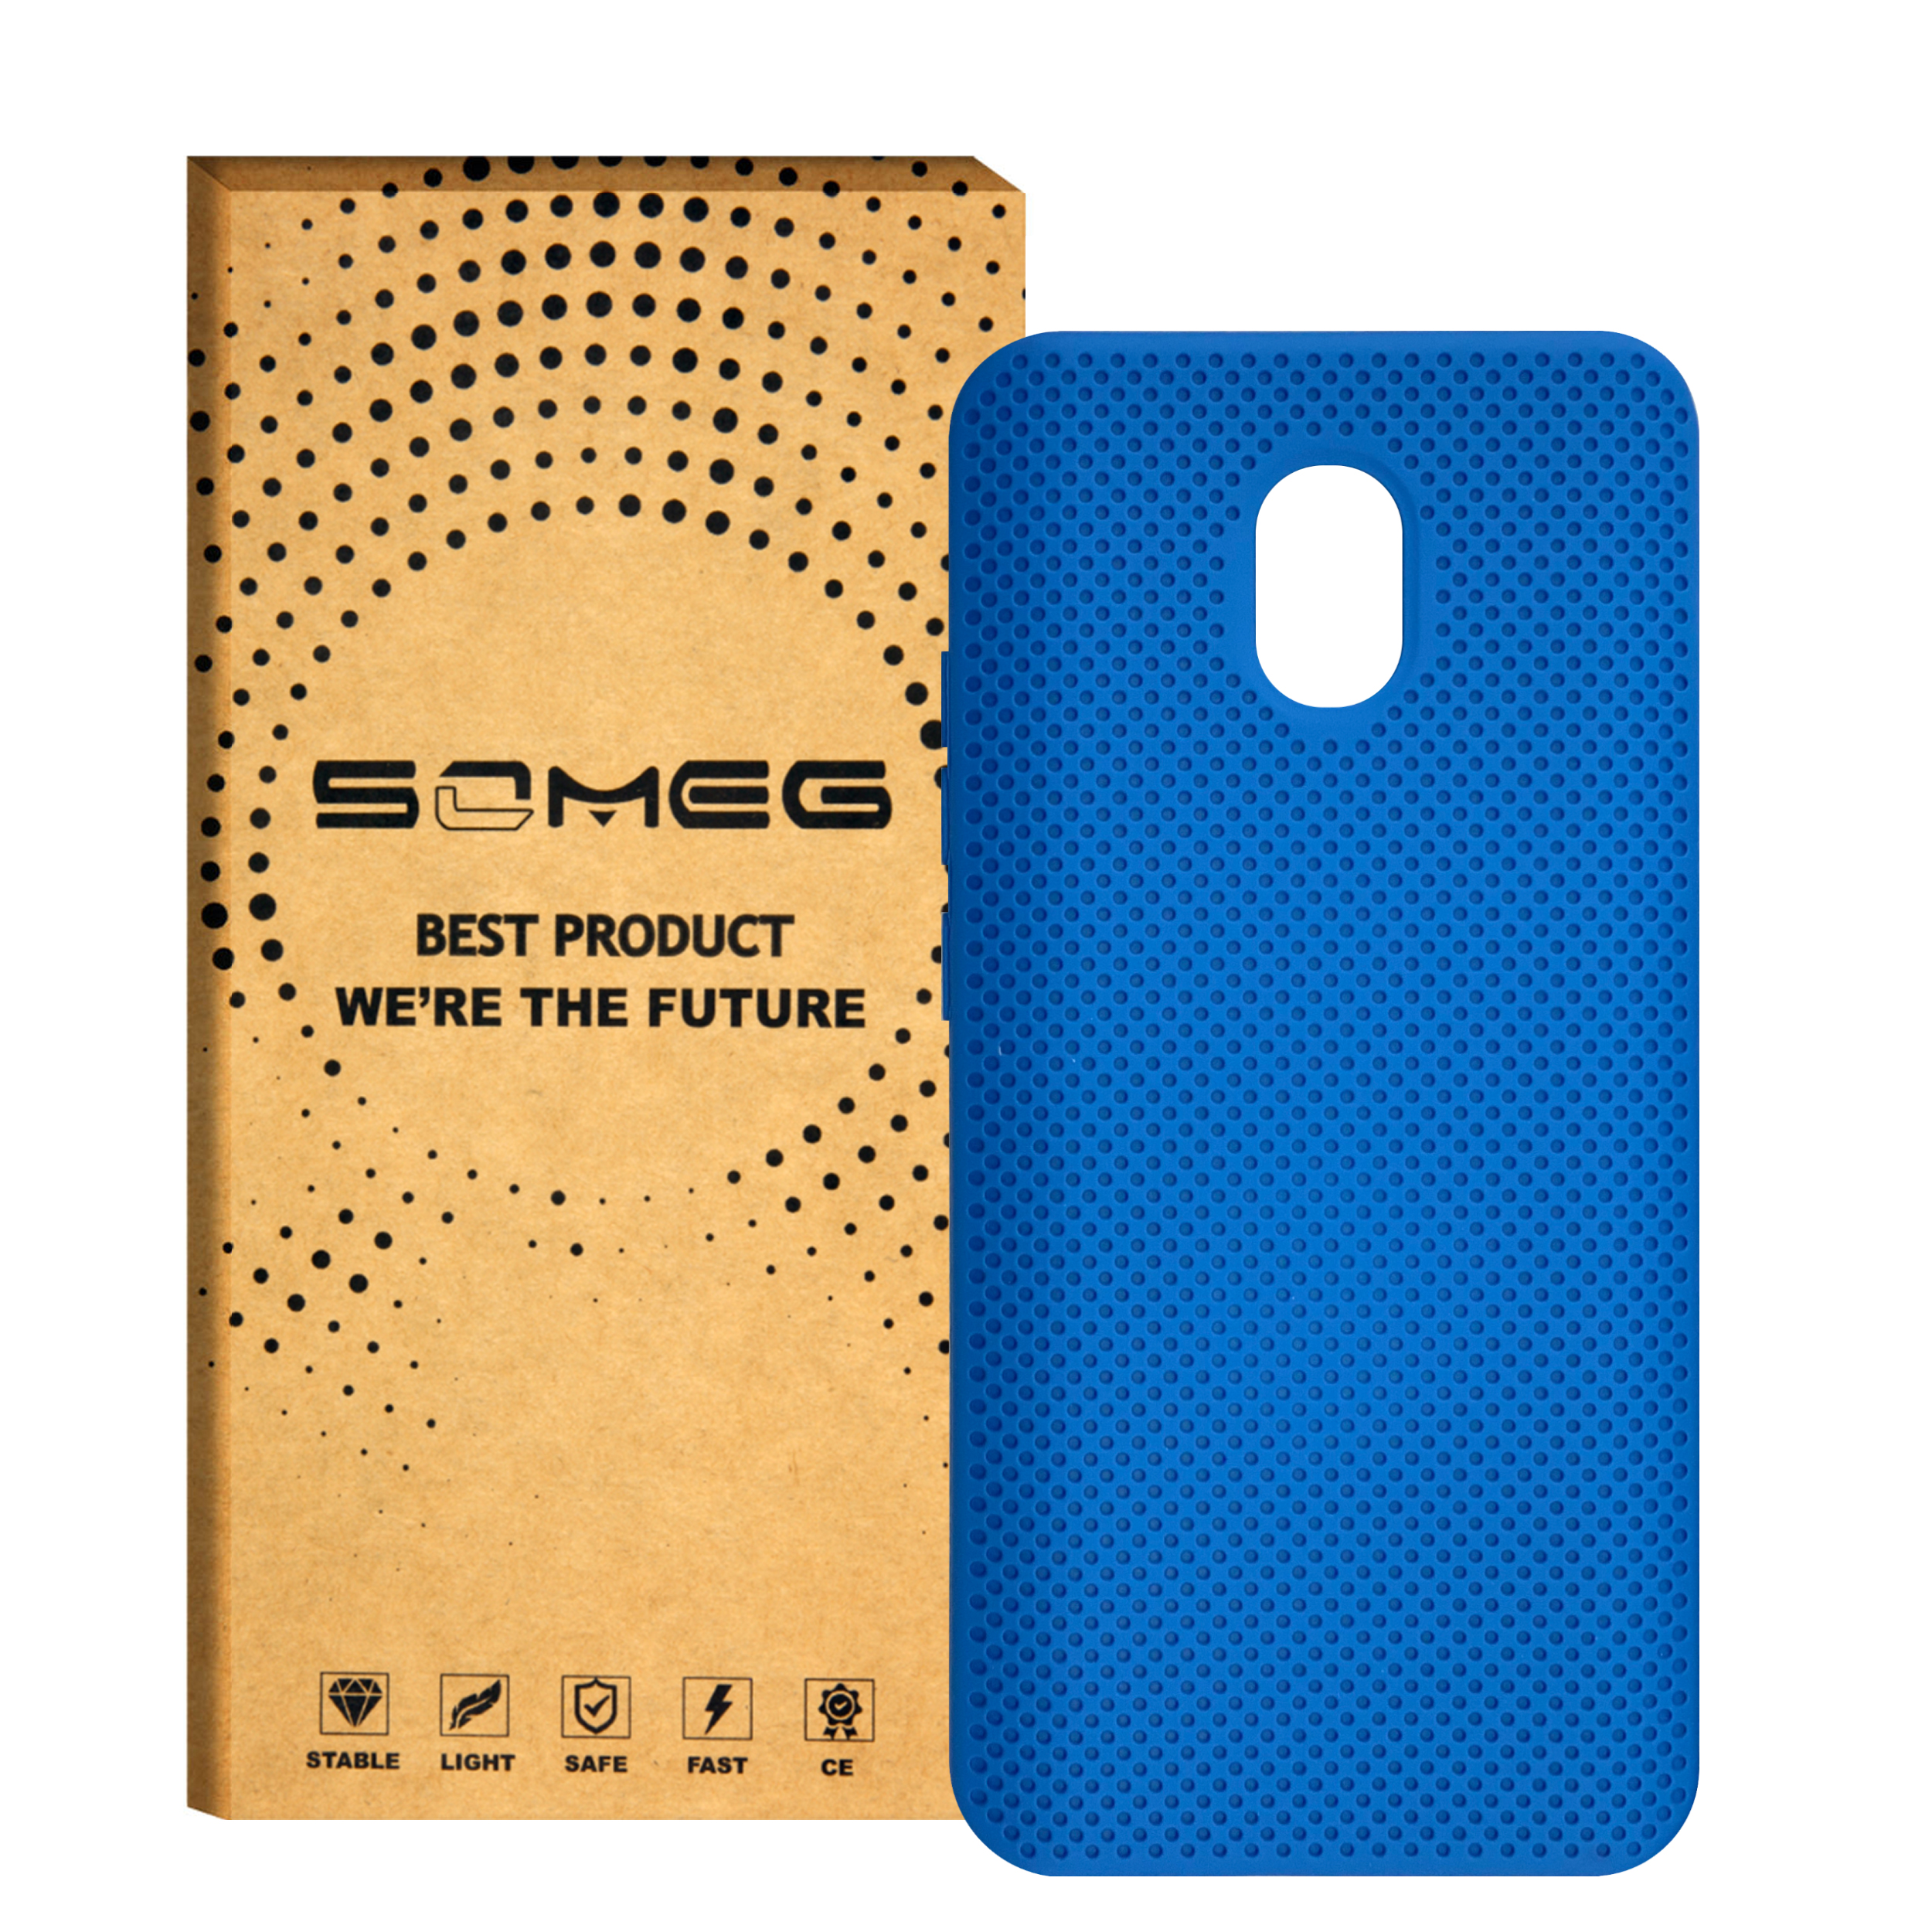 کاور سومگ مدل SMG-Needle مناسب برای گوشی موبایل شیائومی Redmi 8A